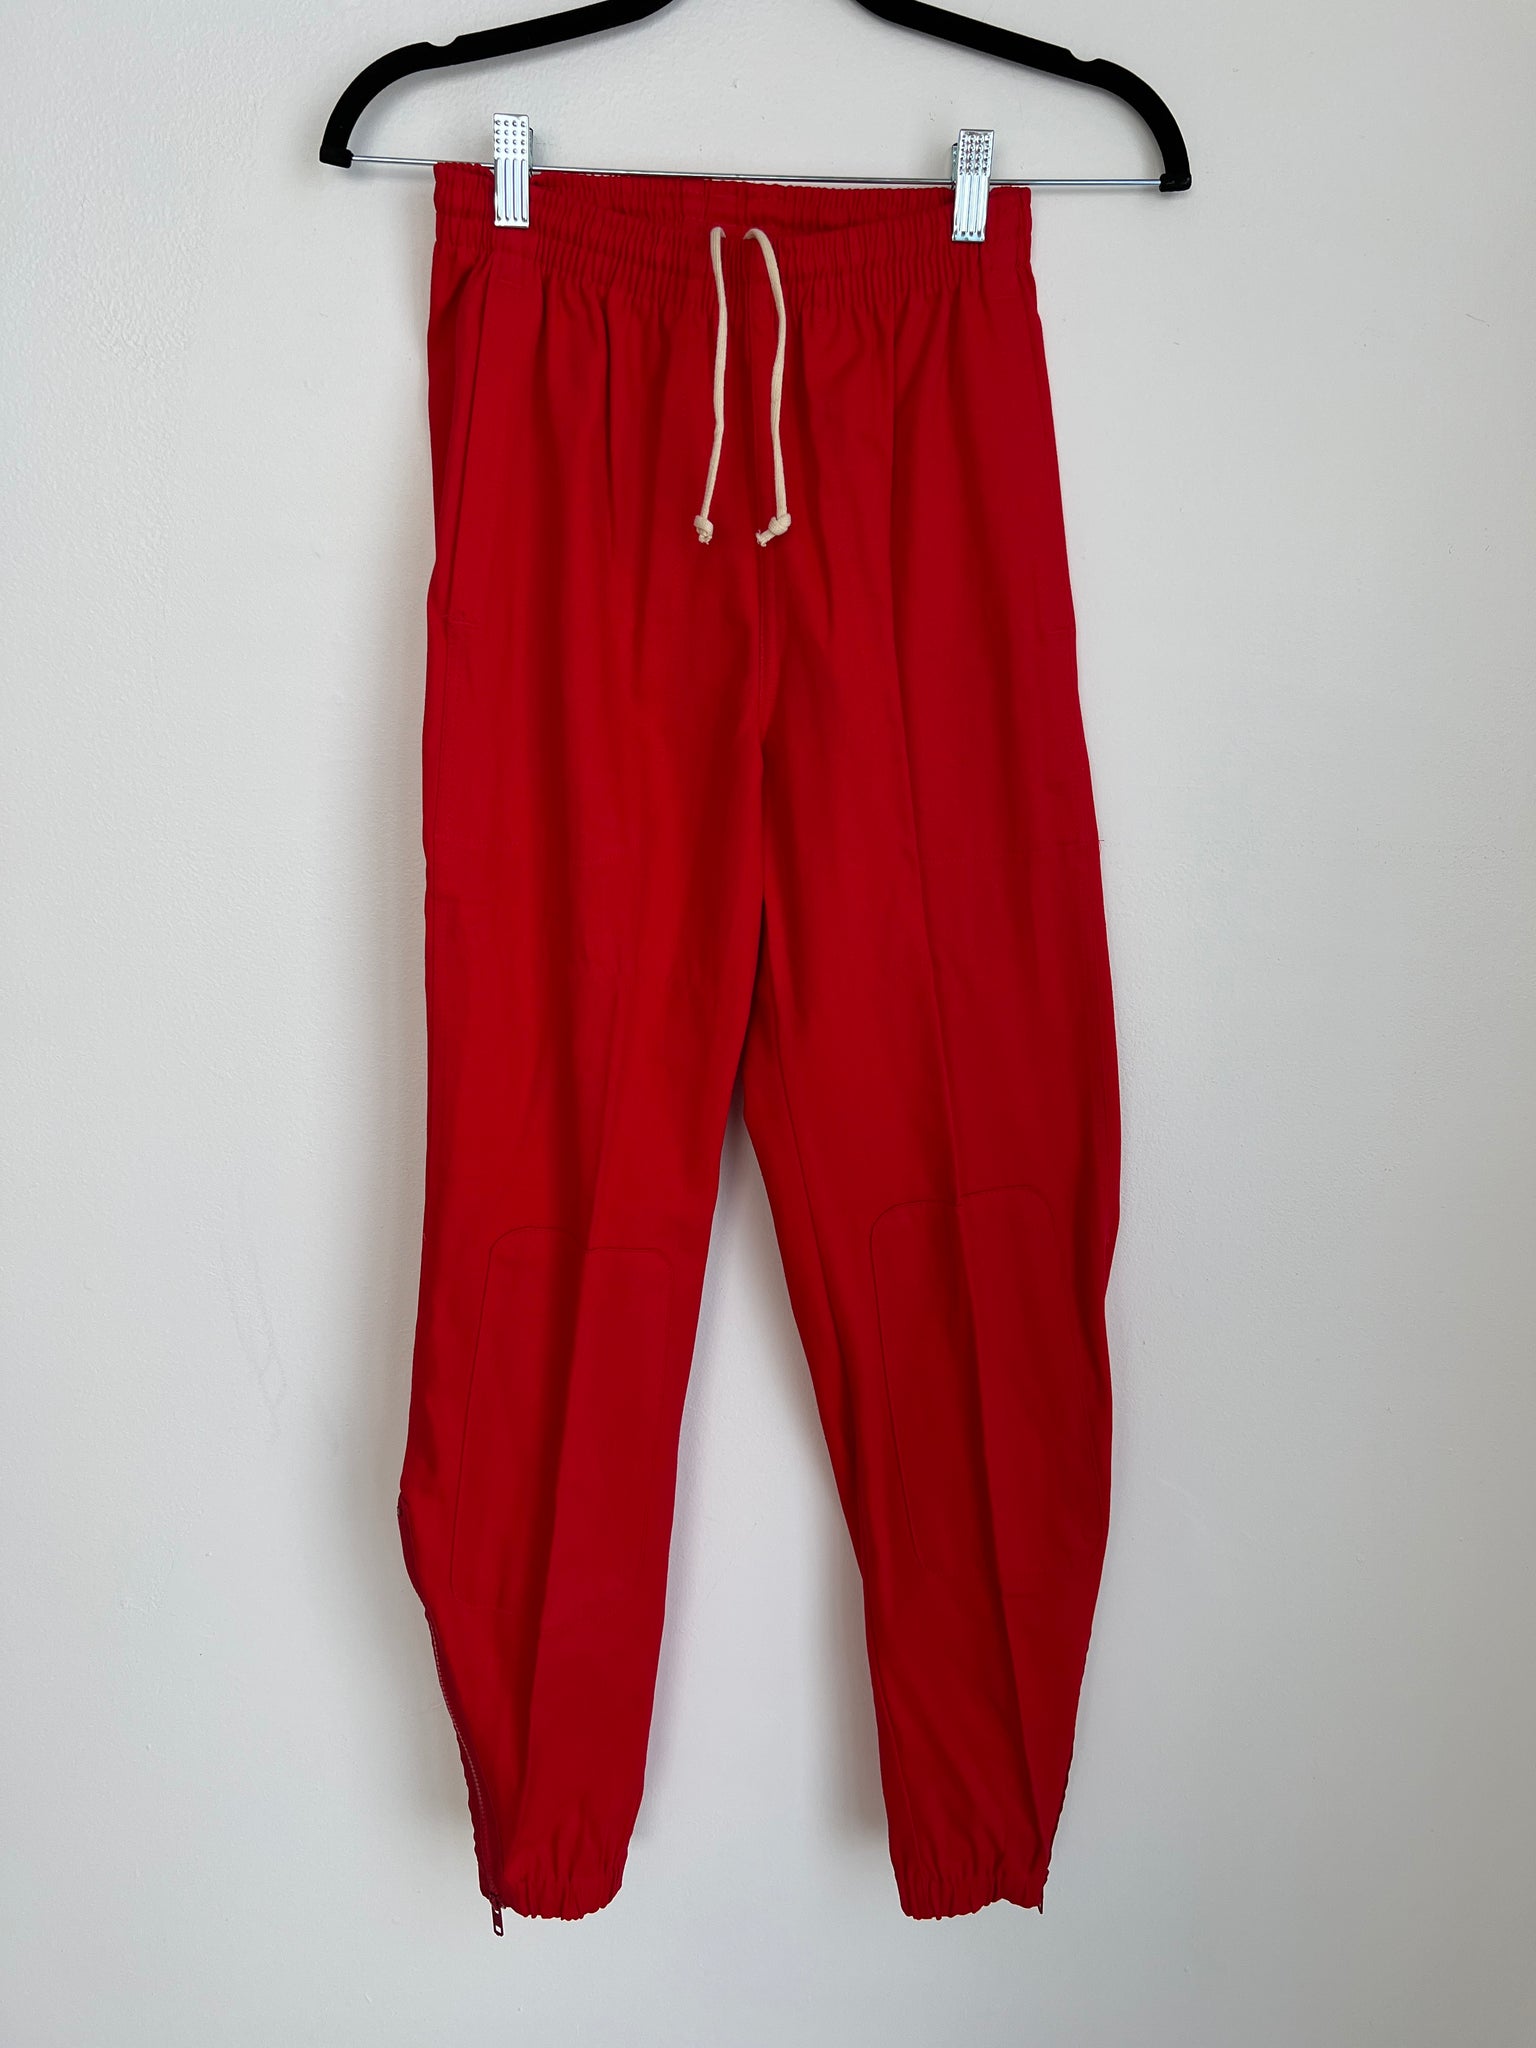 1980s PANTS- red drawstring w/ zipper detail at elastic hem